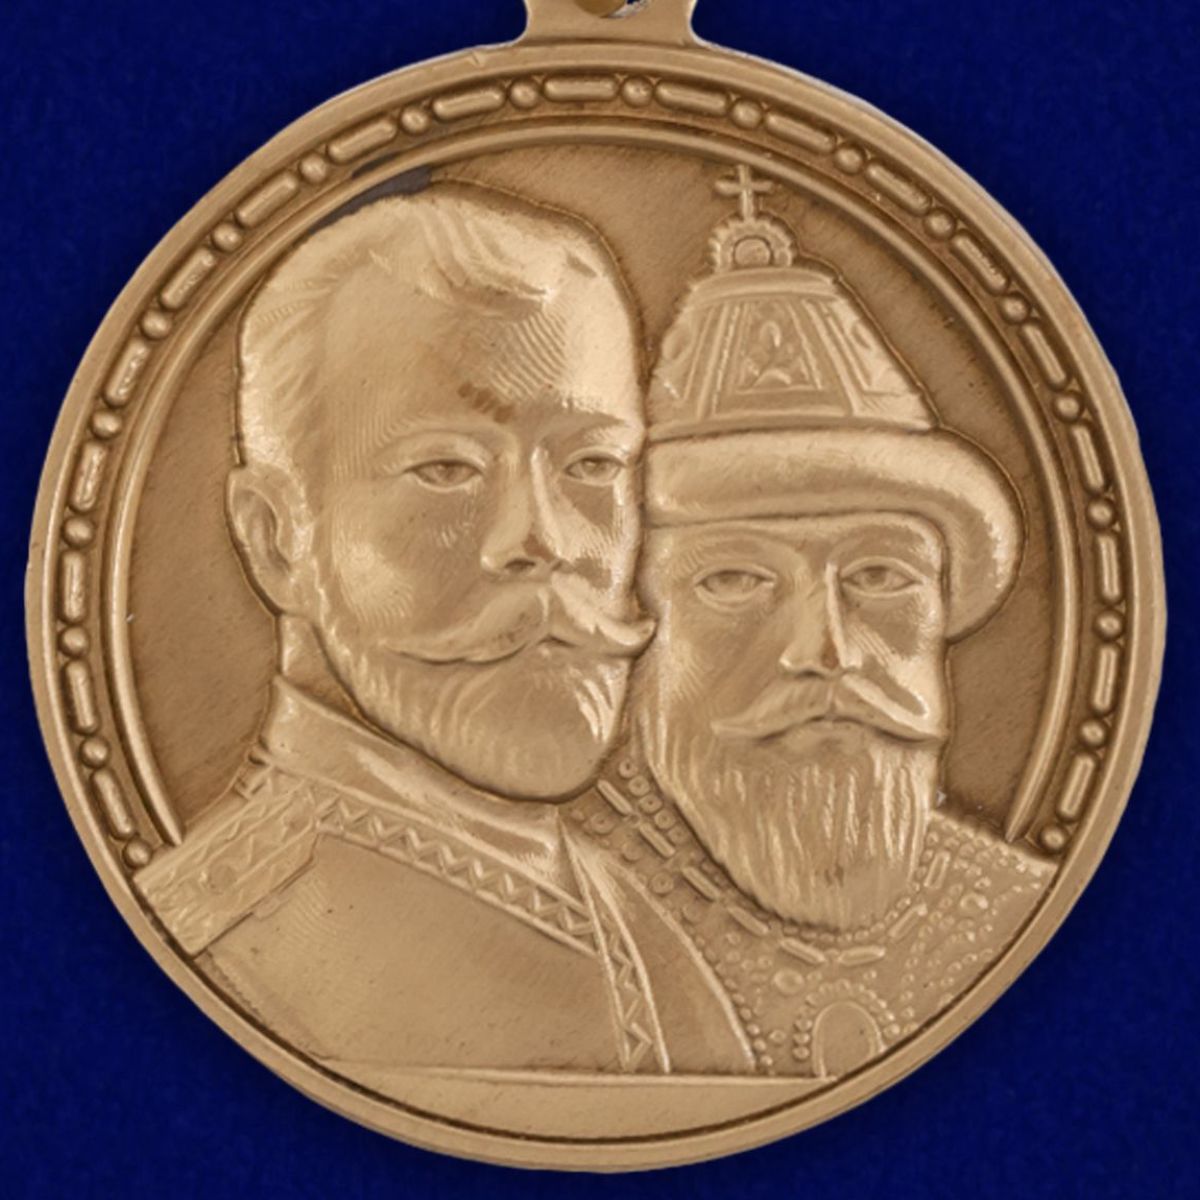 Медаль «В память 300-летия царствования дома Романовых» 